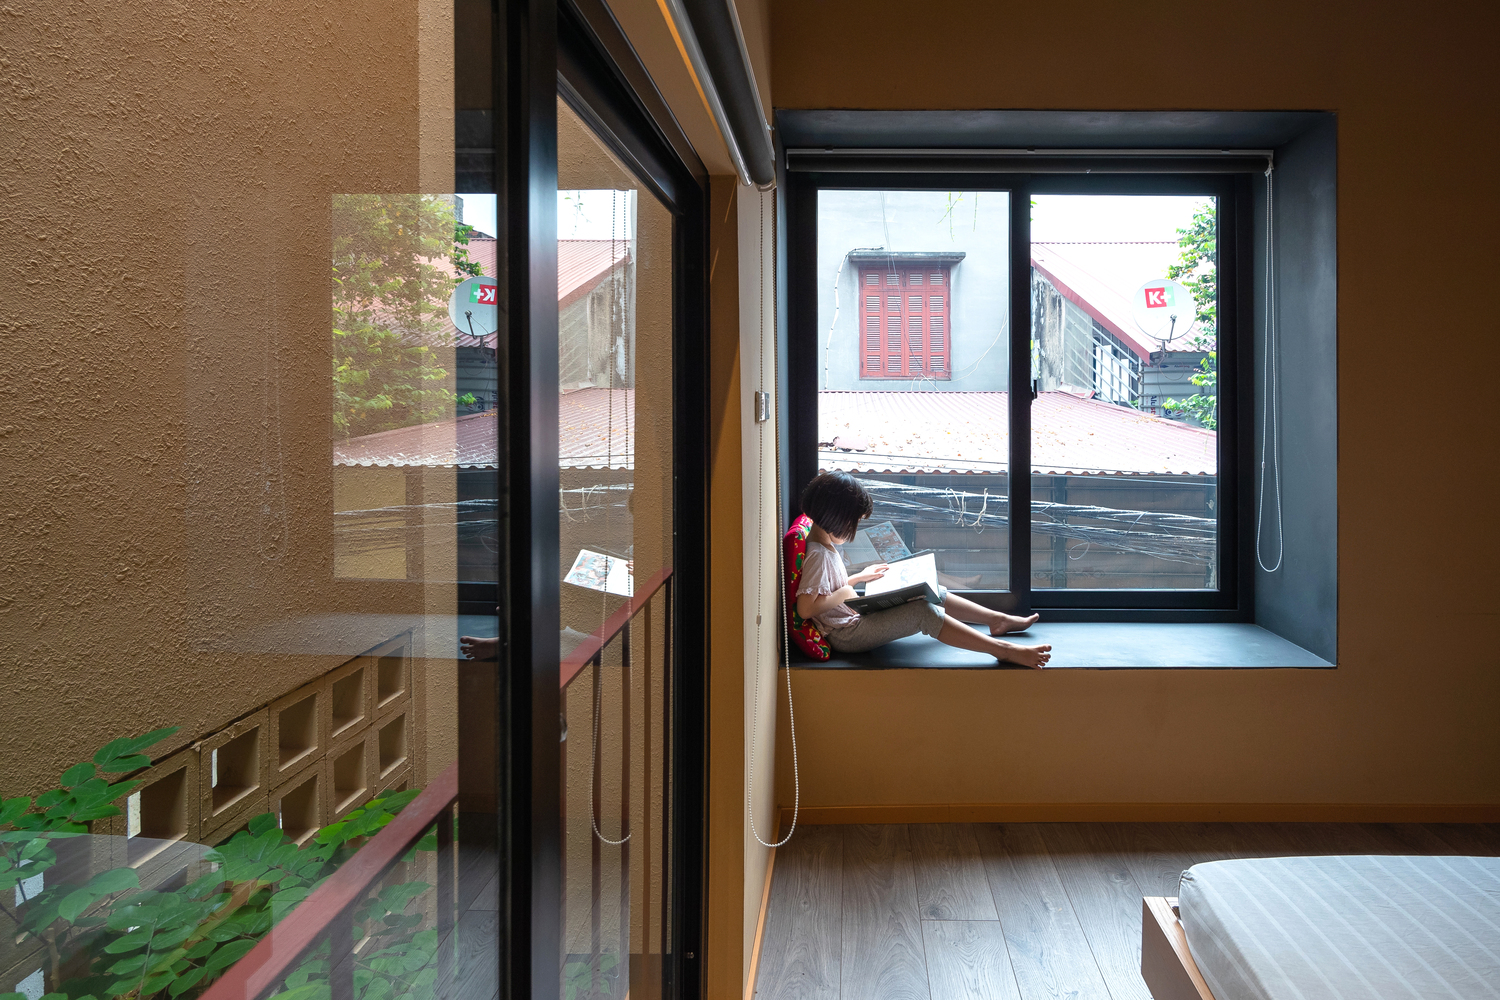 hình ảnh bé gái ngồi đọc sách trên bệ cửa sổ kính